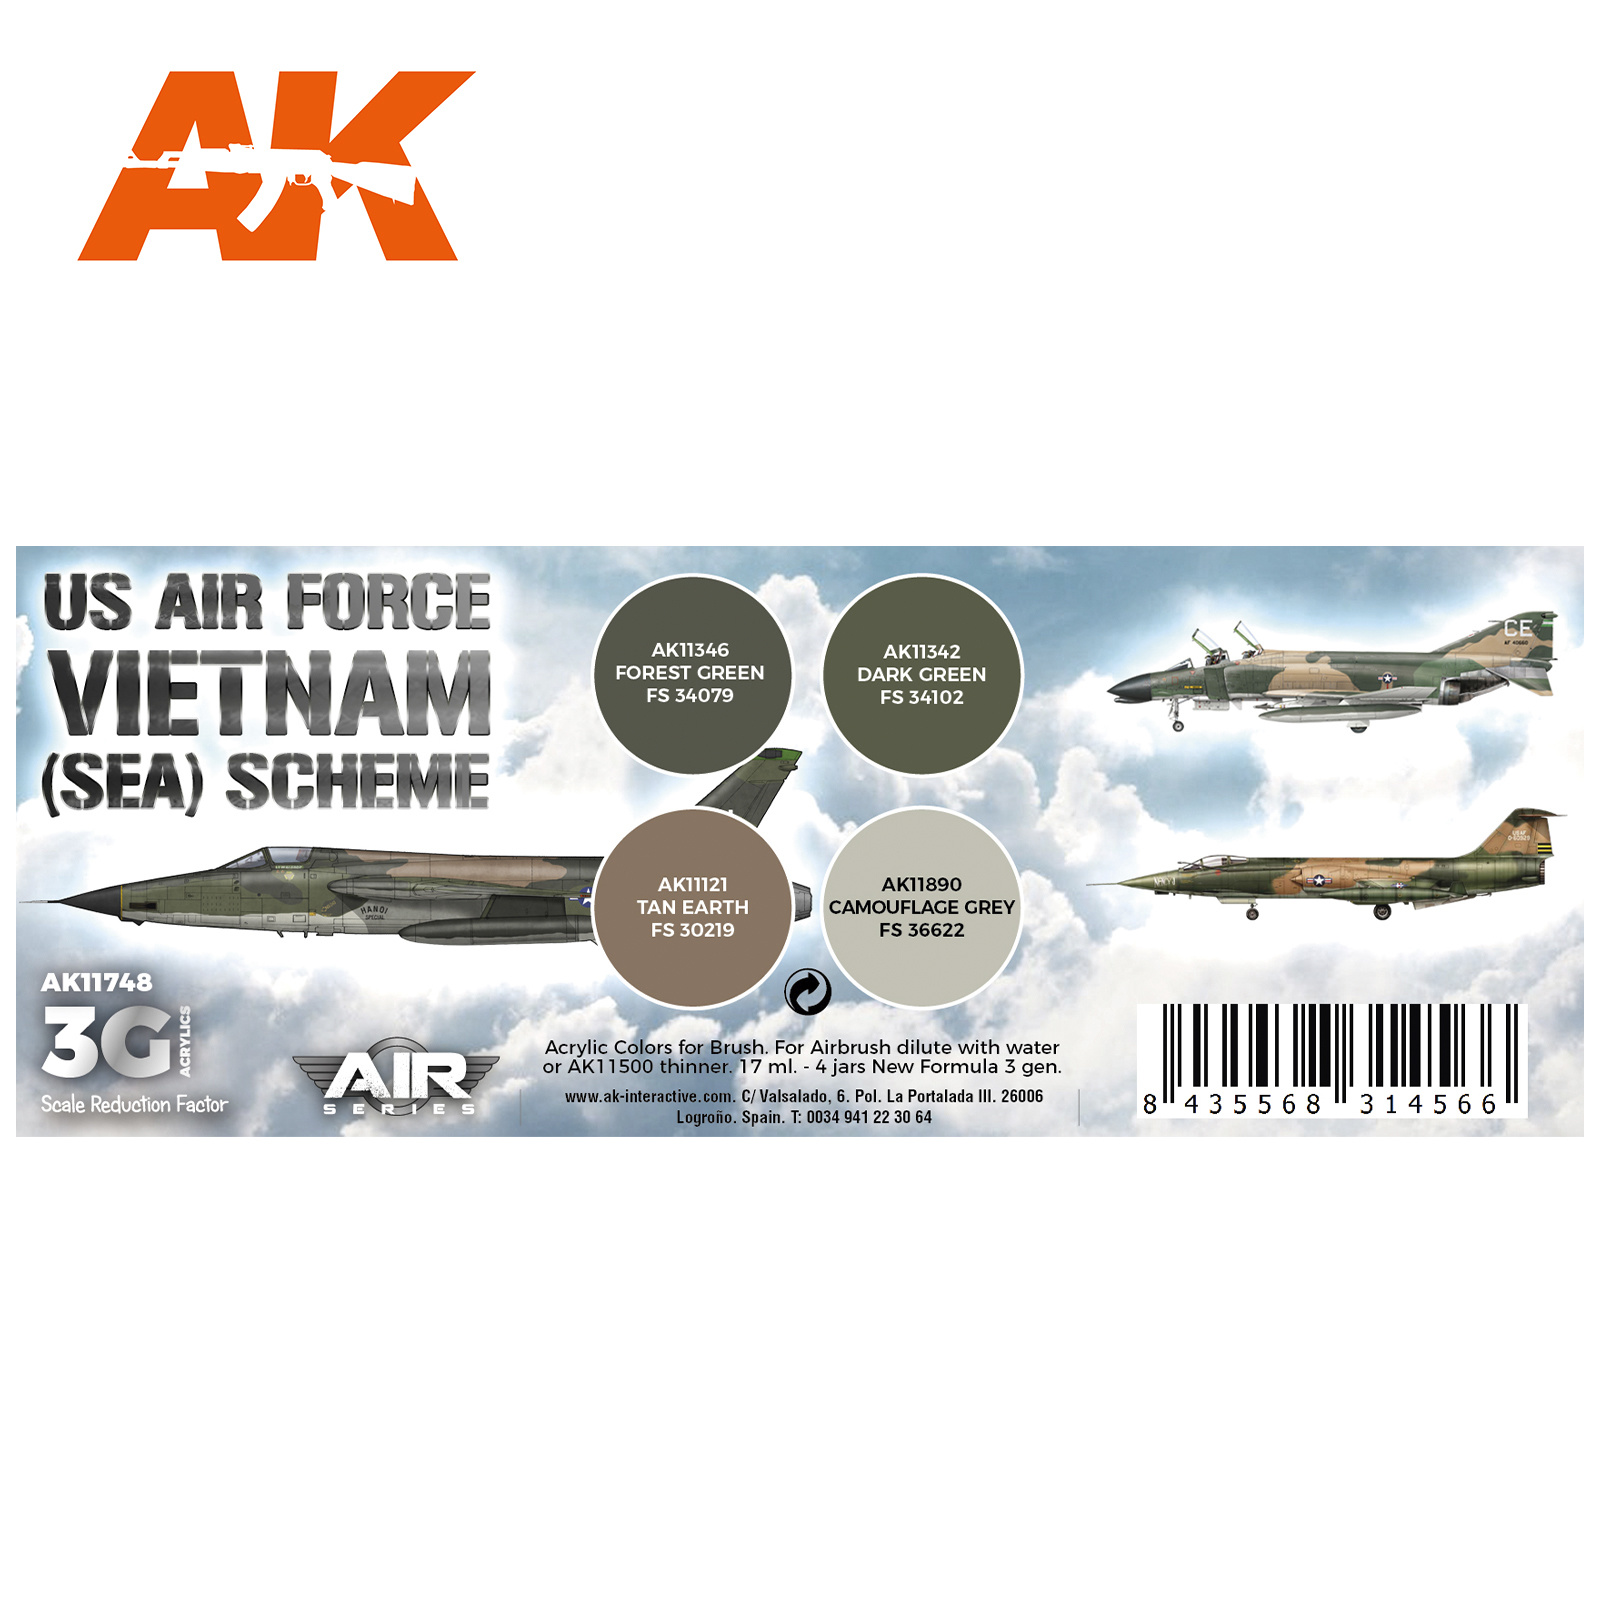 AK-Interactive US Air Force South East Asia (SEA) Scheme Set - AK-Interactive - AK-11748